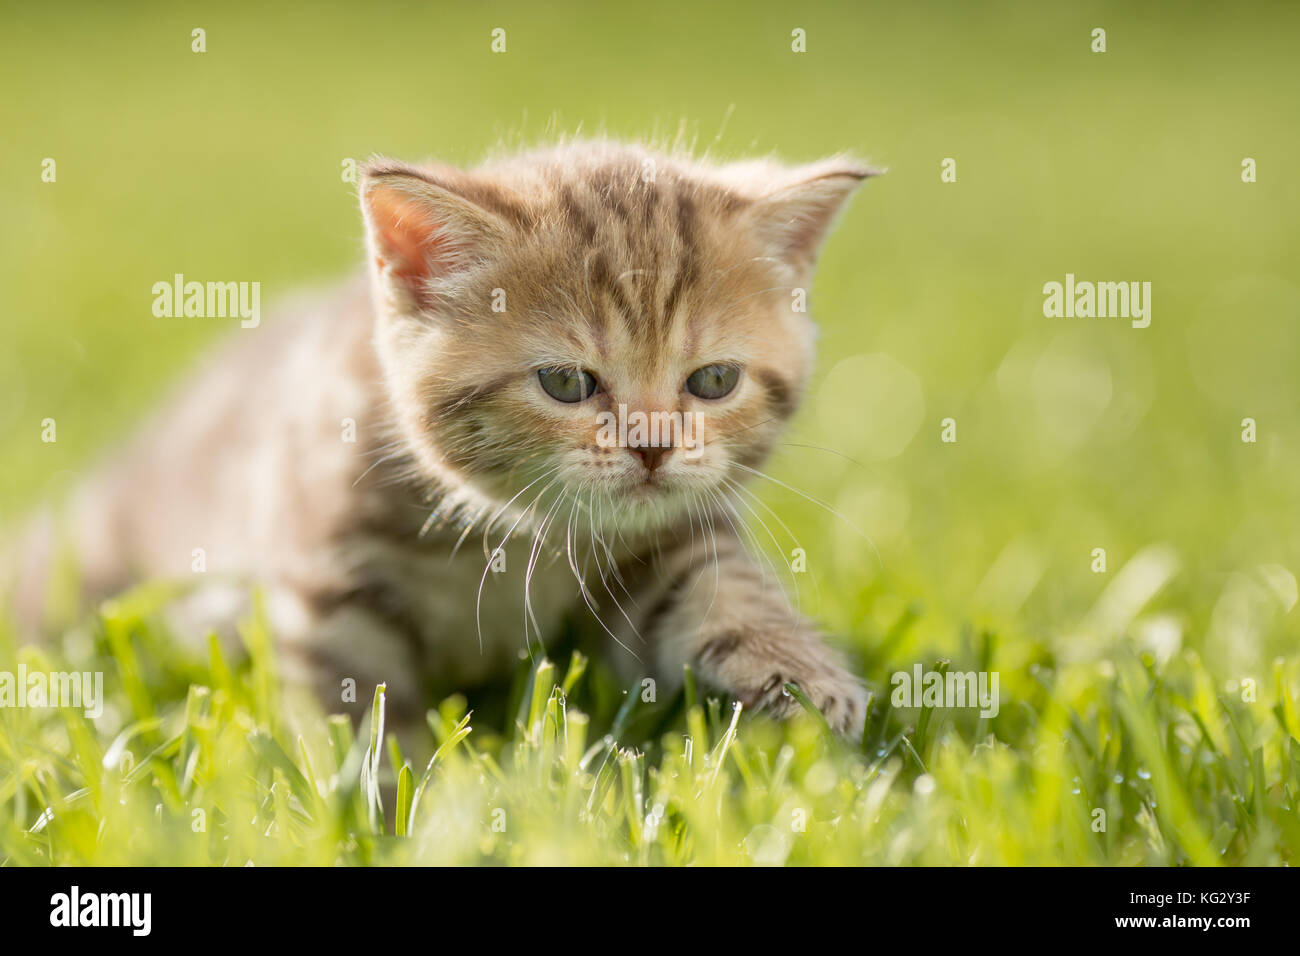 Bébé chat chaton dans l'herbe verte Banque D'Images